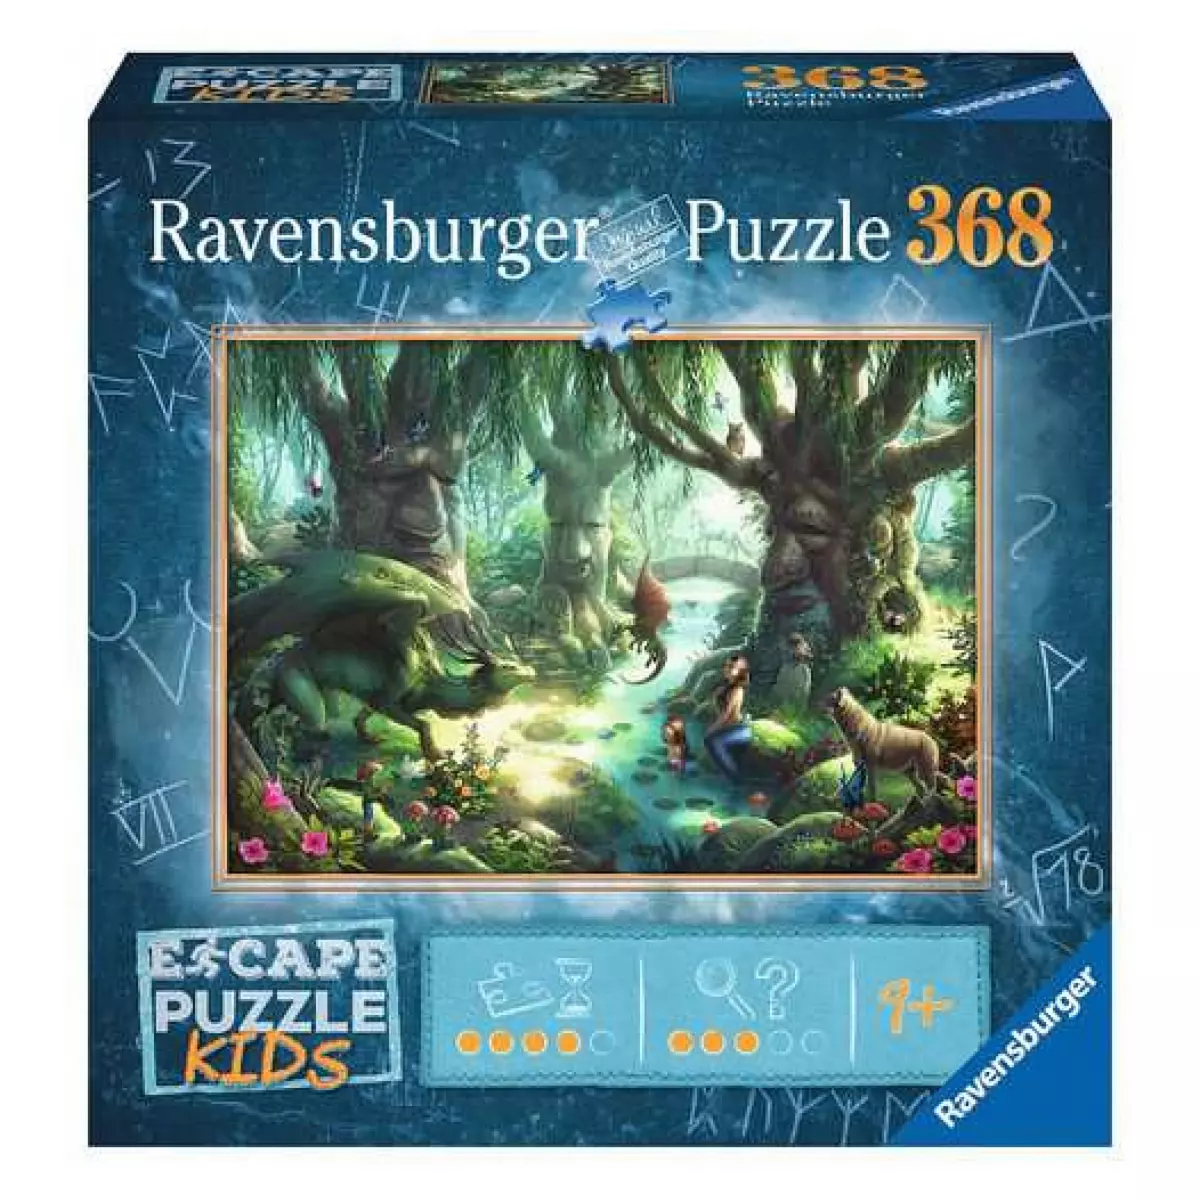 RAVENSBURGER Escape Puzzle Kids Magic Forest Contour pour puzzle 368 pieces